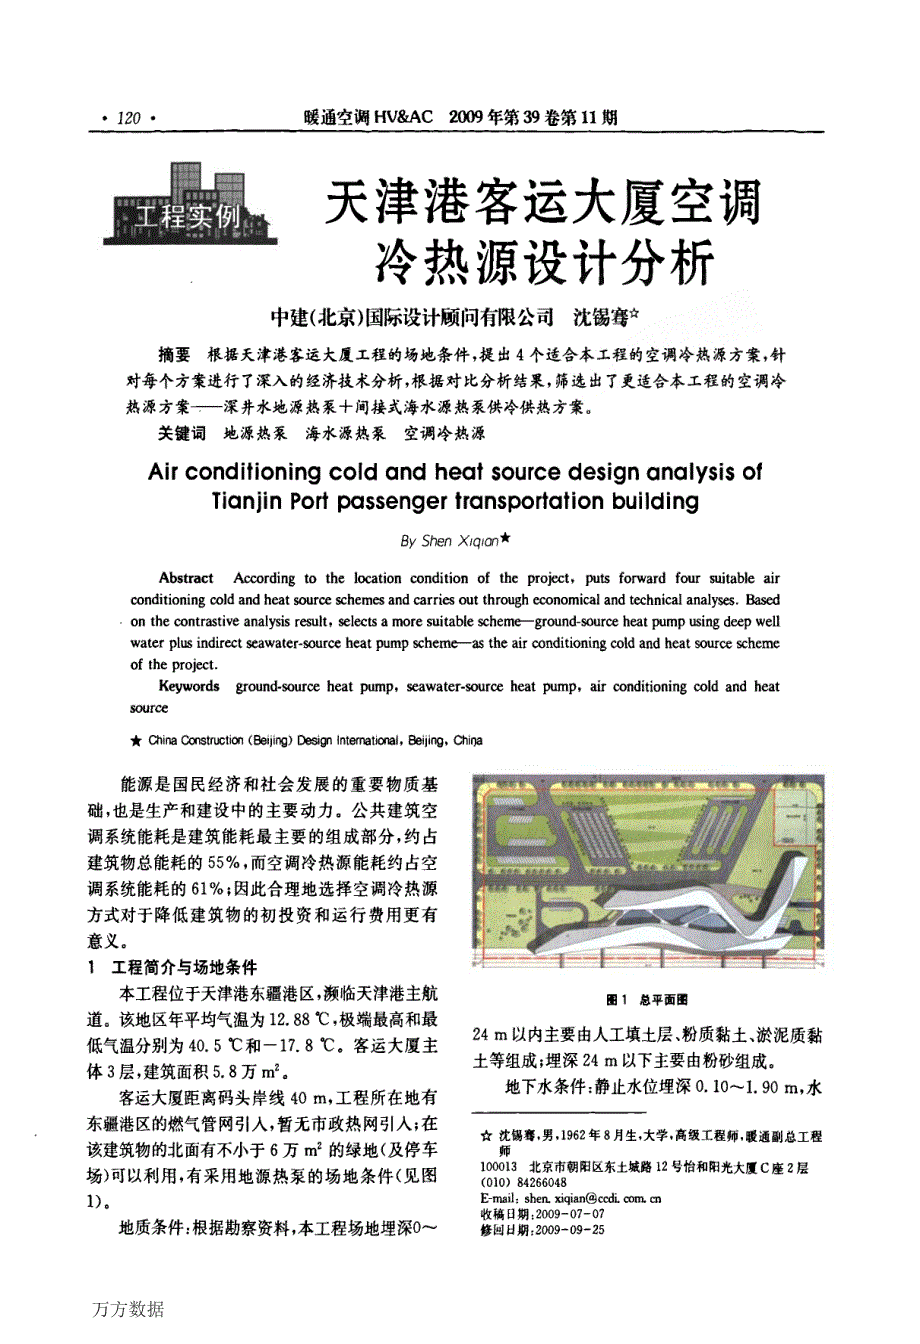 天津港客运大厦空调冷热源设计分析_第1页